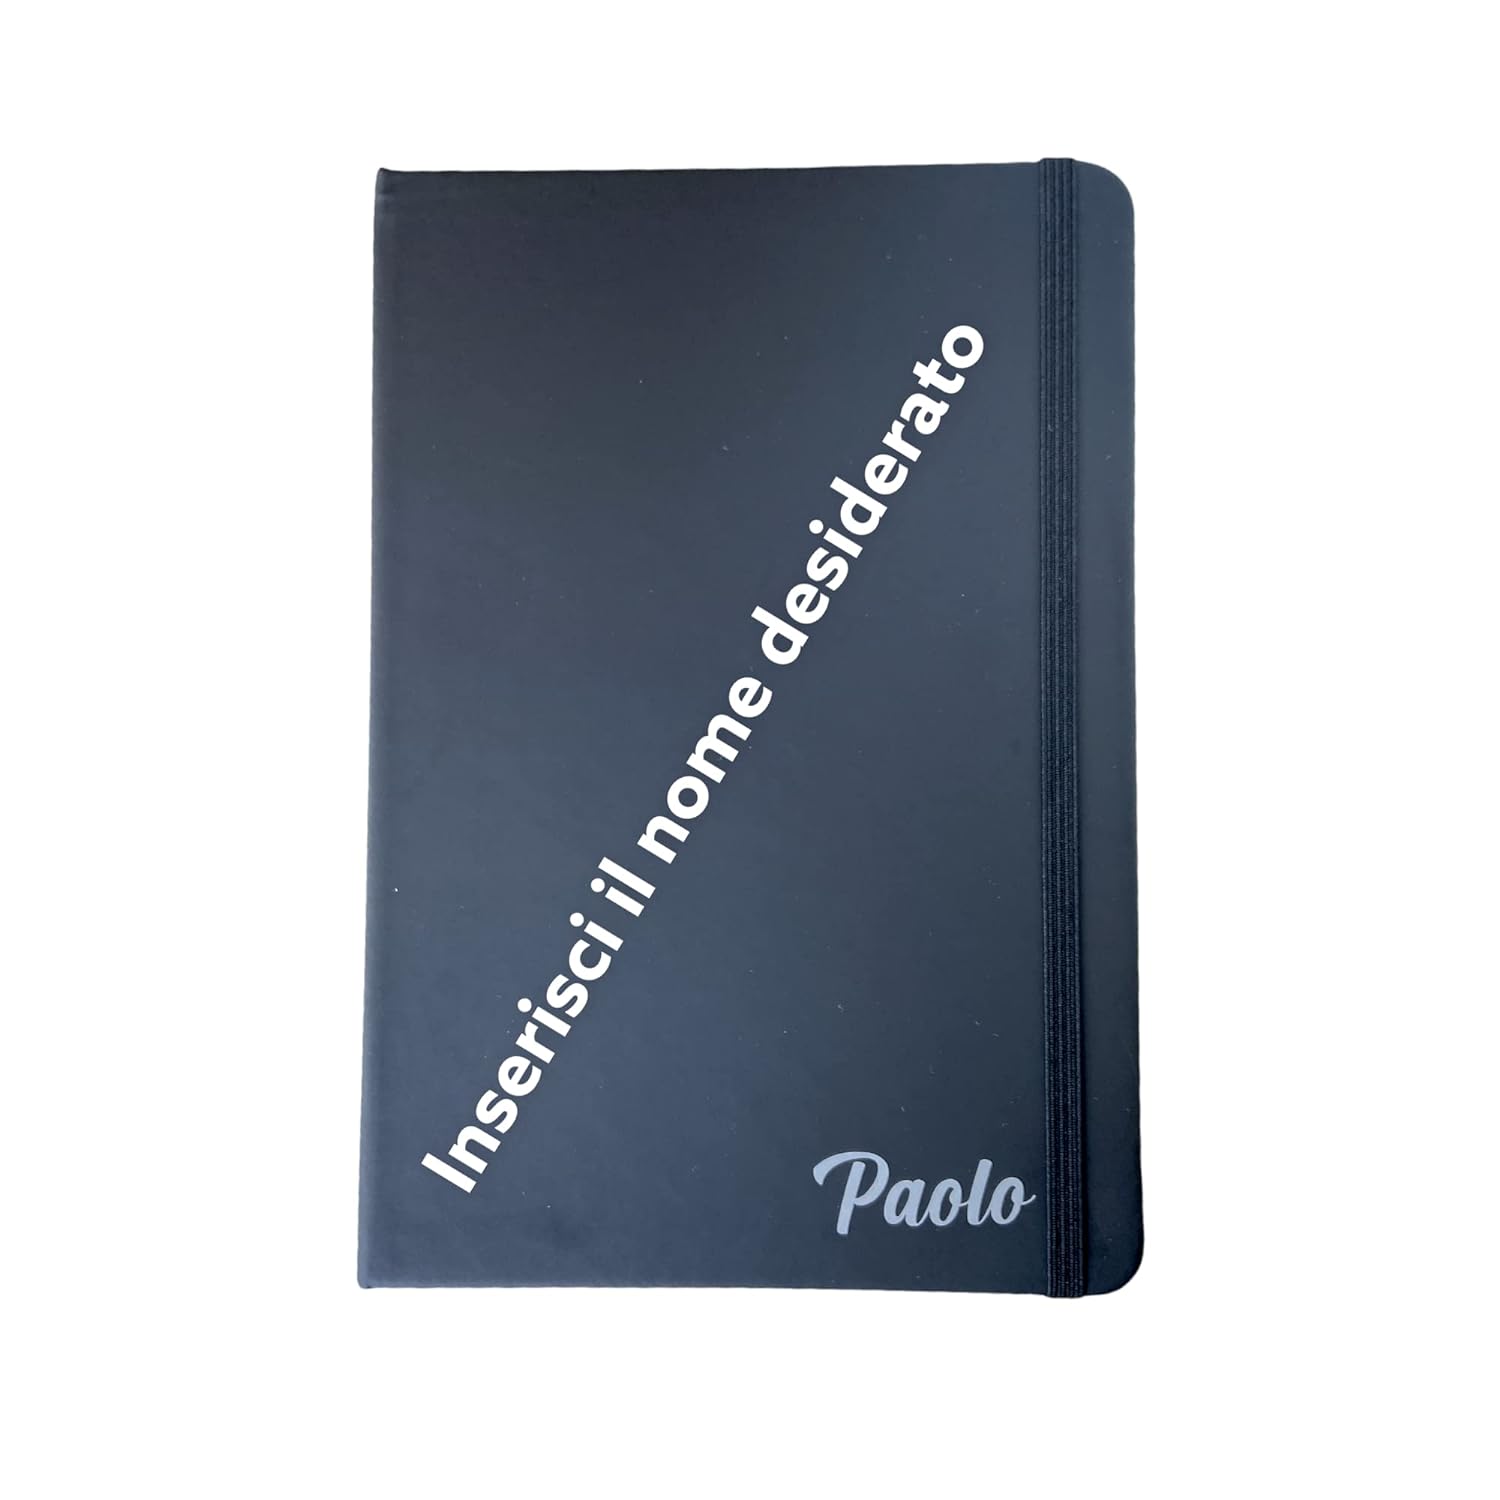 Stile Moleskine Classic Notebook personalizzato con nome e dedica, Taccuino o Quaderno, Copertina Rigida e Chiusura ad Elastico, Formato Large 14,7 x 21 cm, 100 Pagine